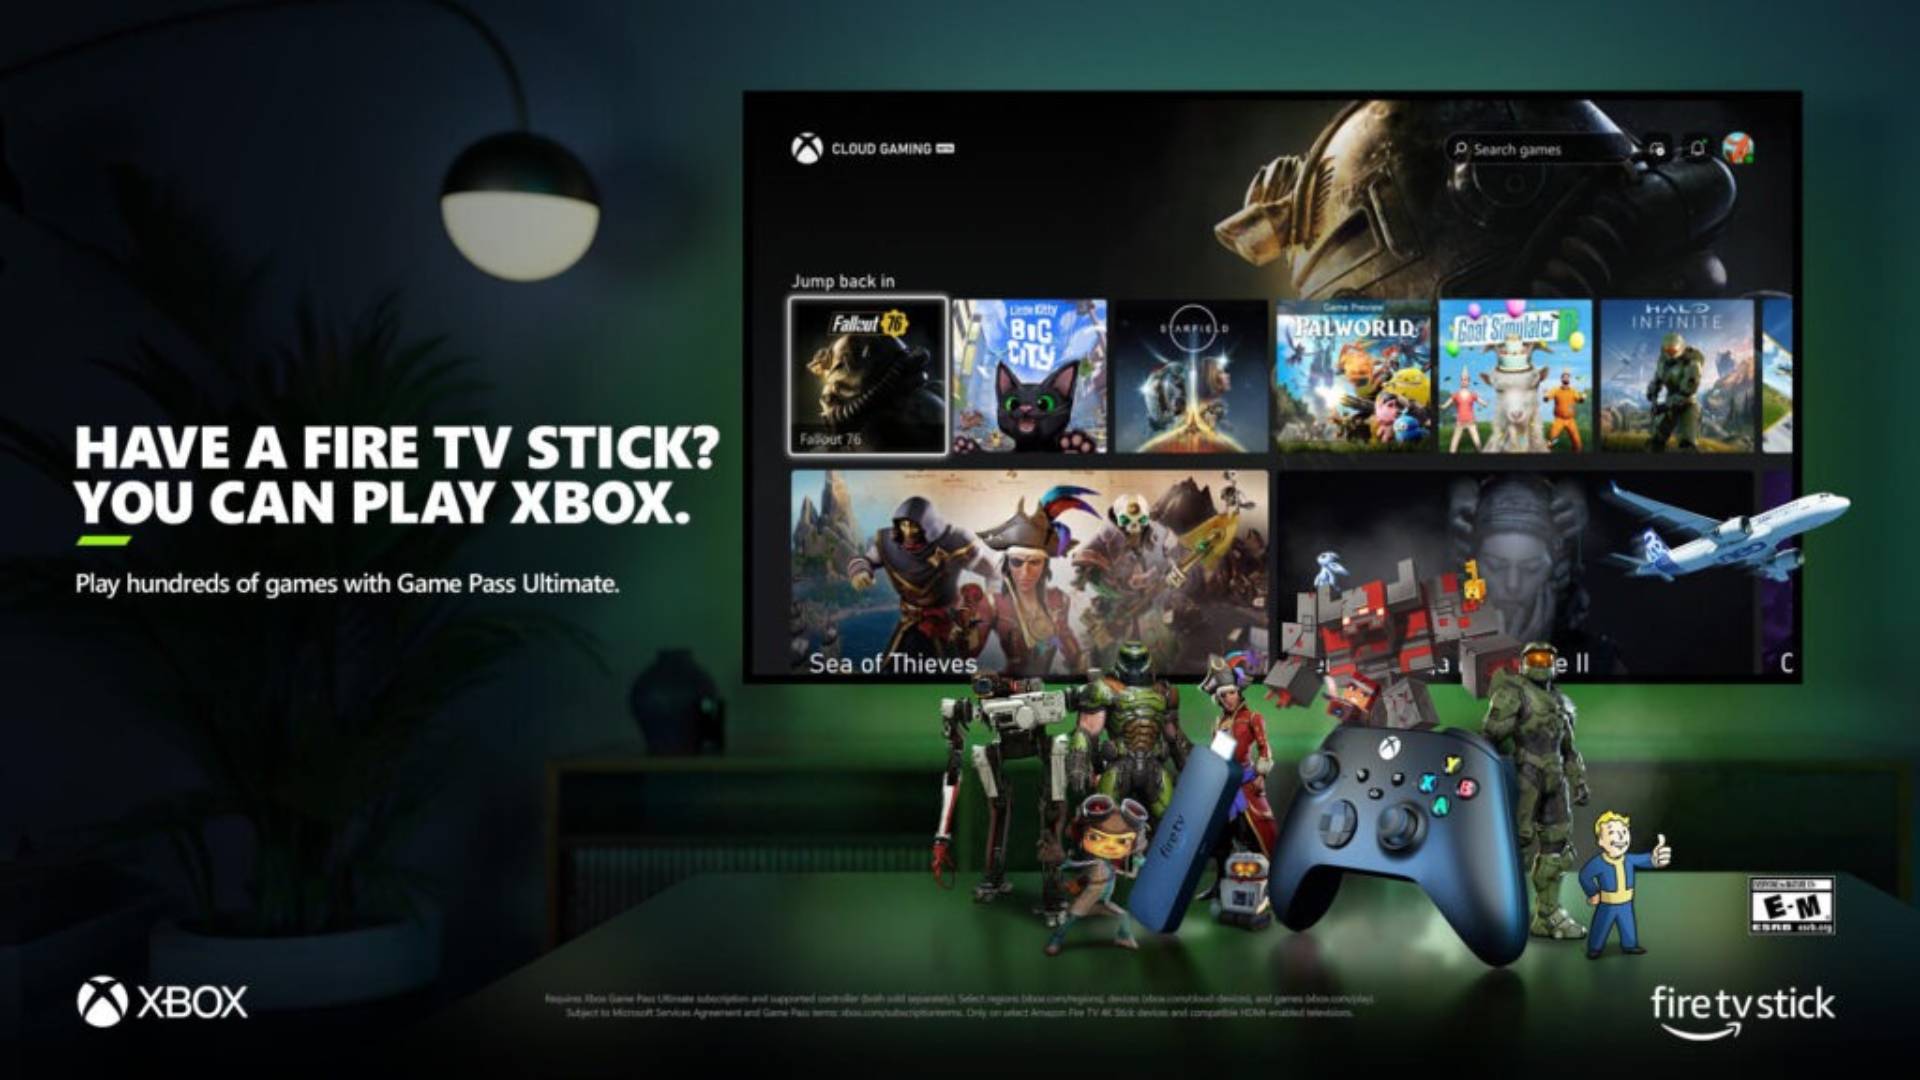 Fire TV Stick で Xbox アプリが利用可能になったことを告知するポスター。